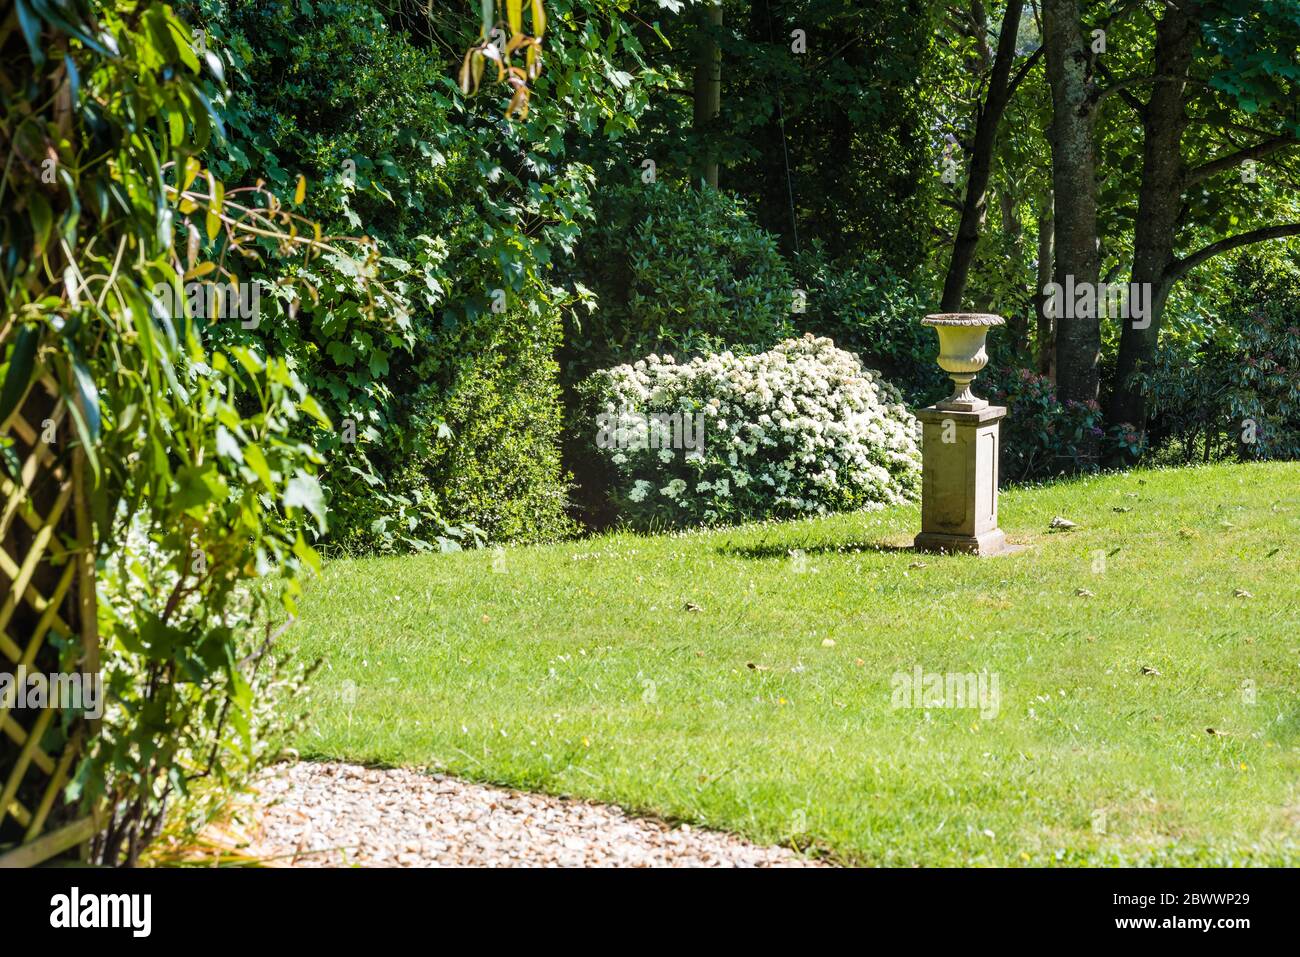 A private country garden in Devon. Stock Photo